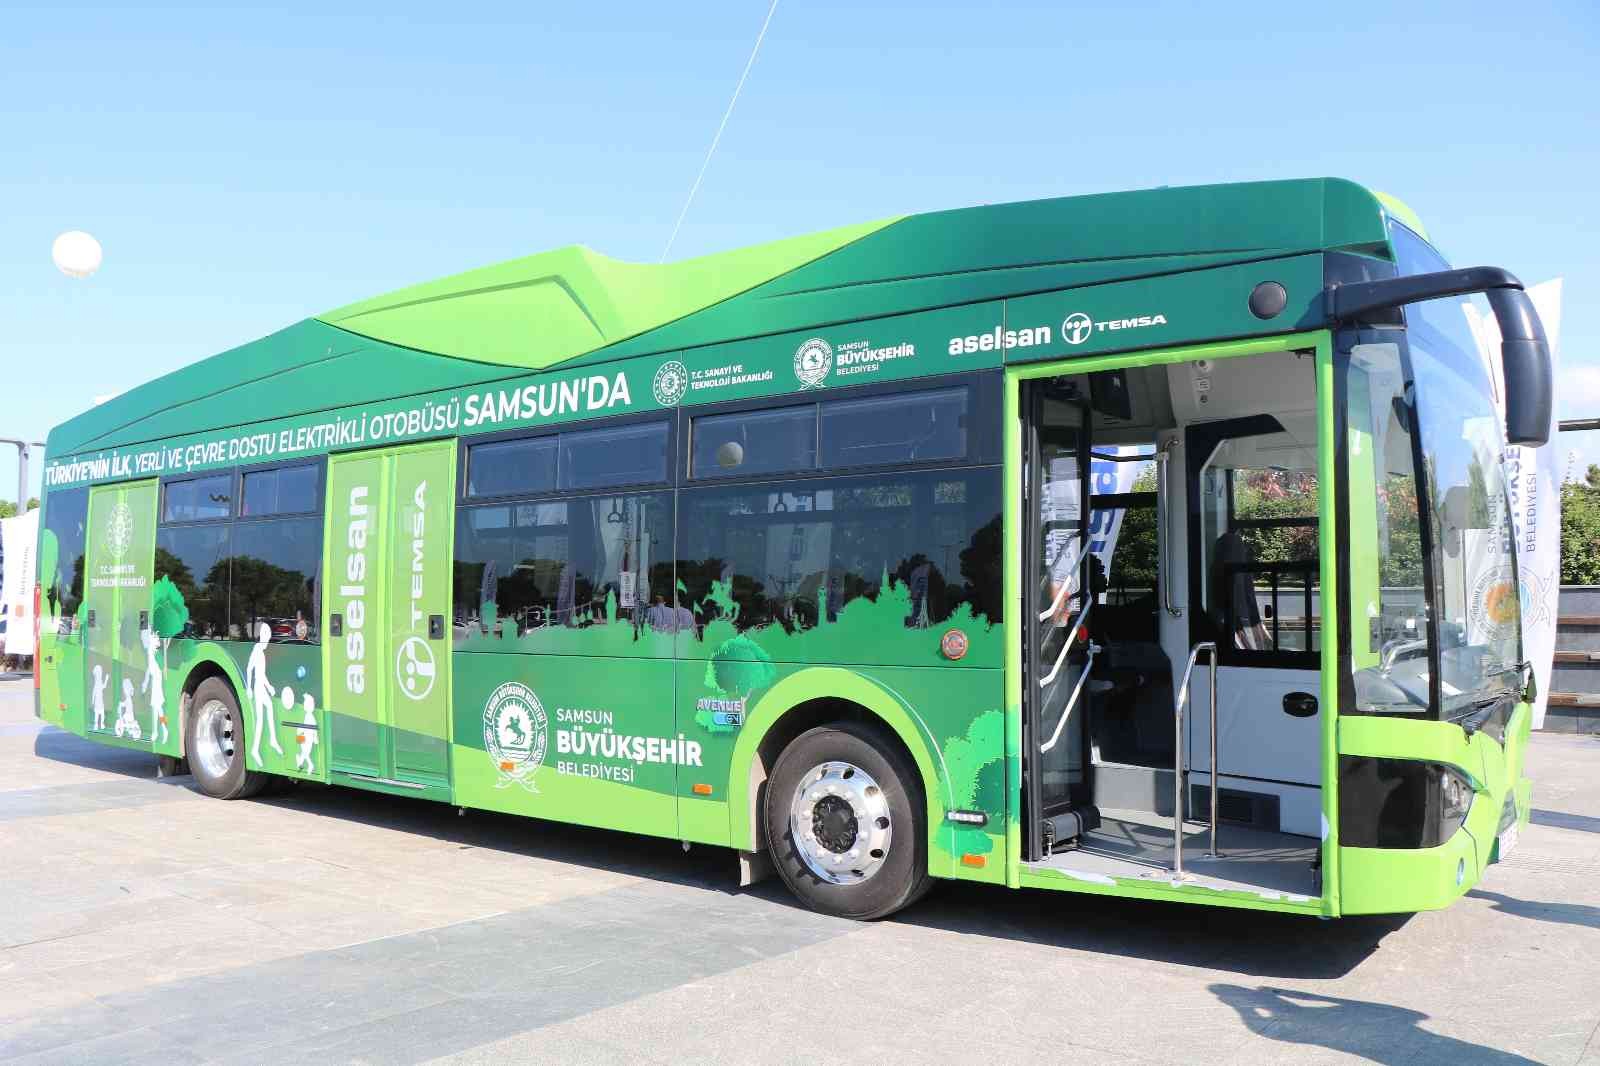 Elektrikli otobüs projesine katılacak belediyeler Samsun’a telif ücreti ödeyecek #samsun